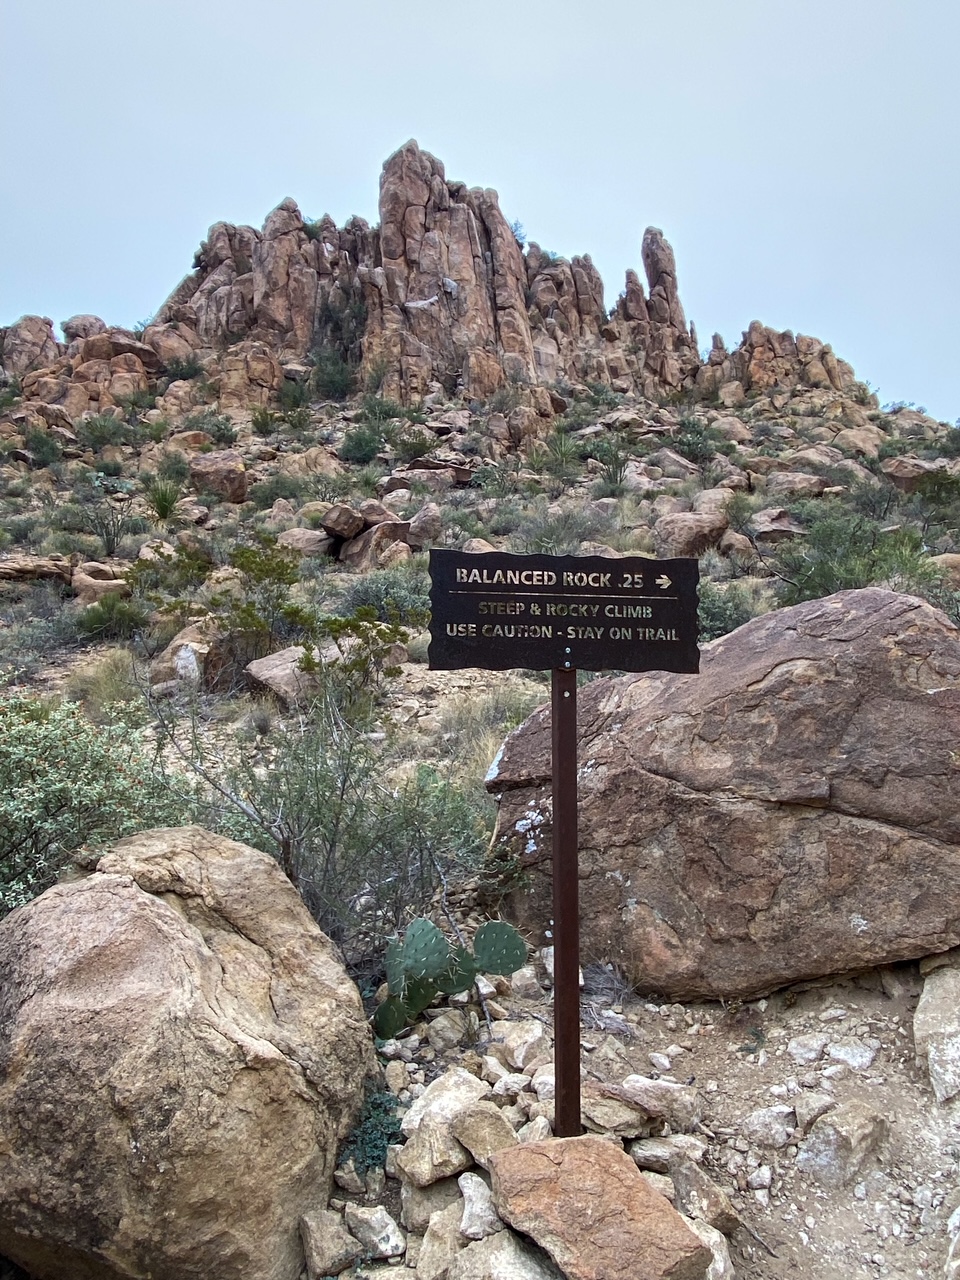 the rock scramble starts at this Balanced Rock sign